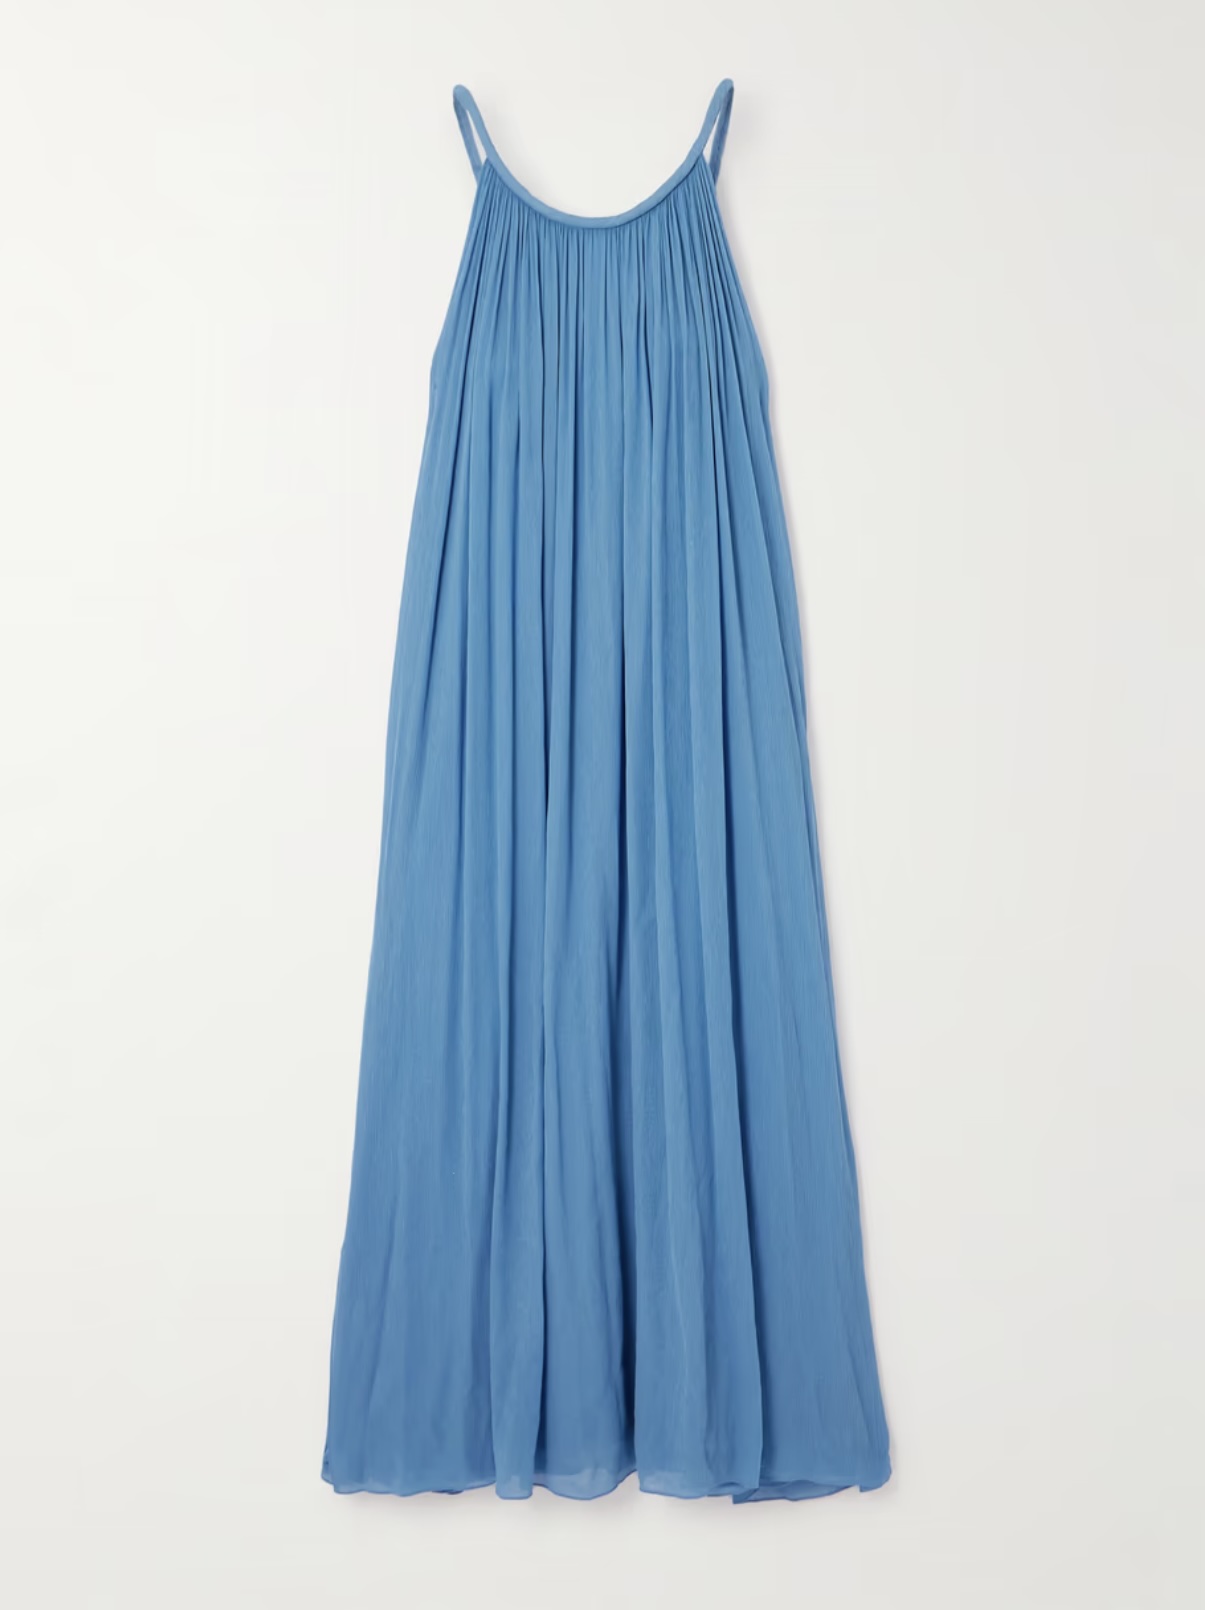 Где найти длинное голубое платье как у Виктории Бекхэм?